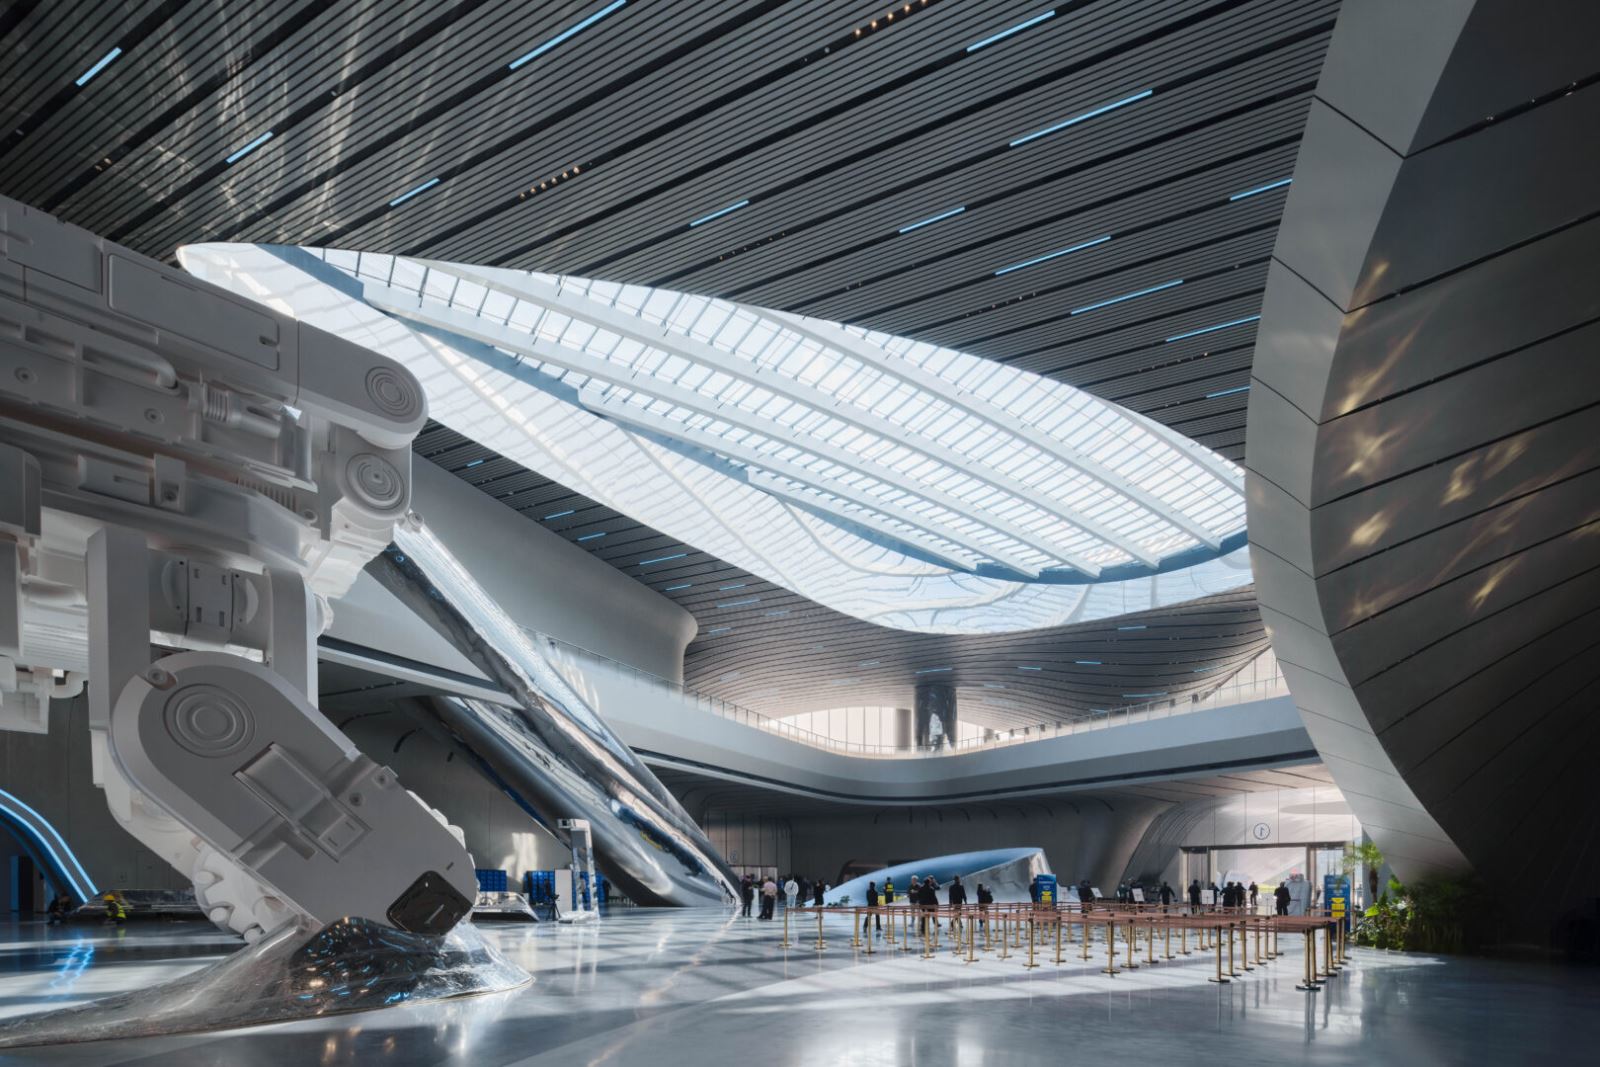 Lạc vào thế giới khoa học viễn tưởng bên trong bảo tàng nổi khổng lồ ở Trung Quốc - Ảnh 4.